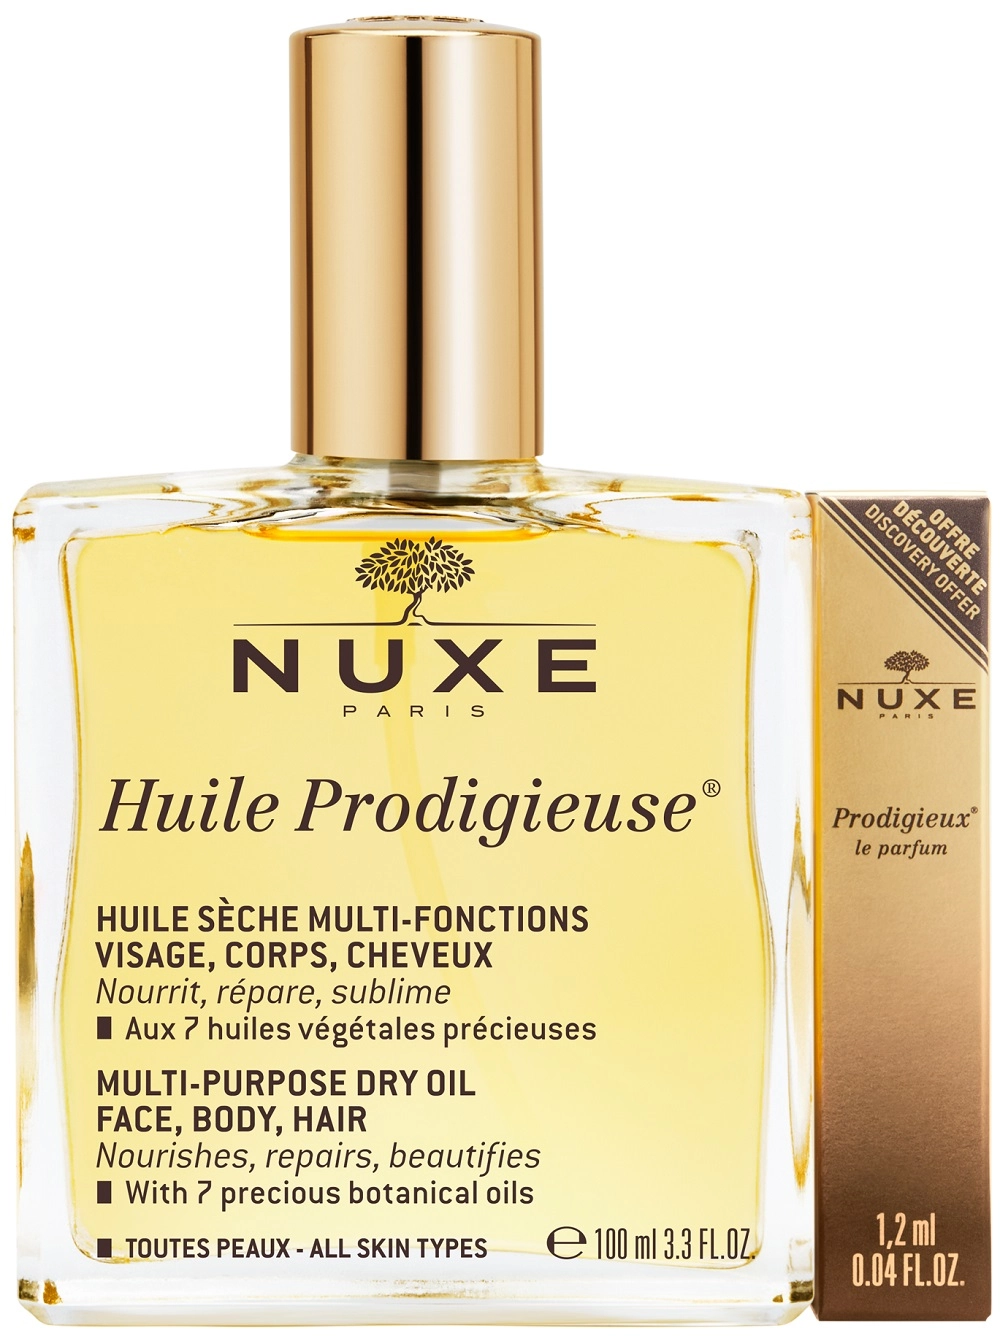 NUXE Huile Prodigieuse többfunkciós szárazolaj arcra, testre, hajra 100 ml + parfüm 1,2 ml